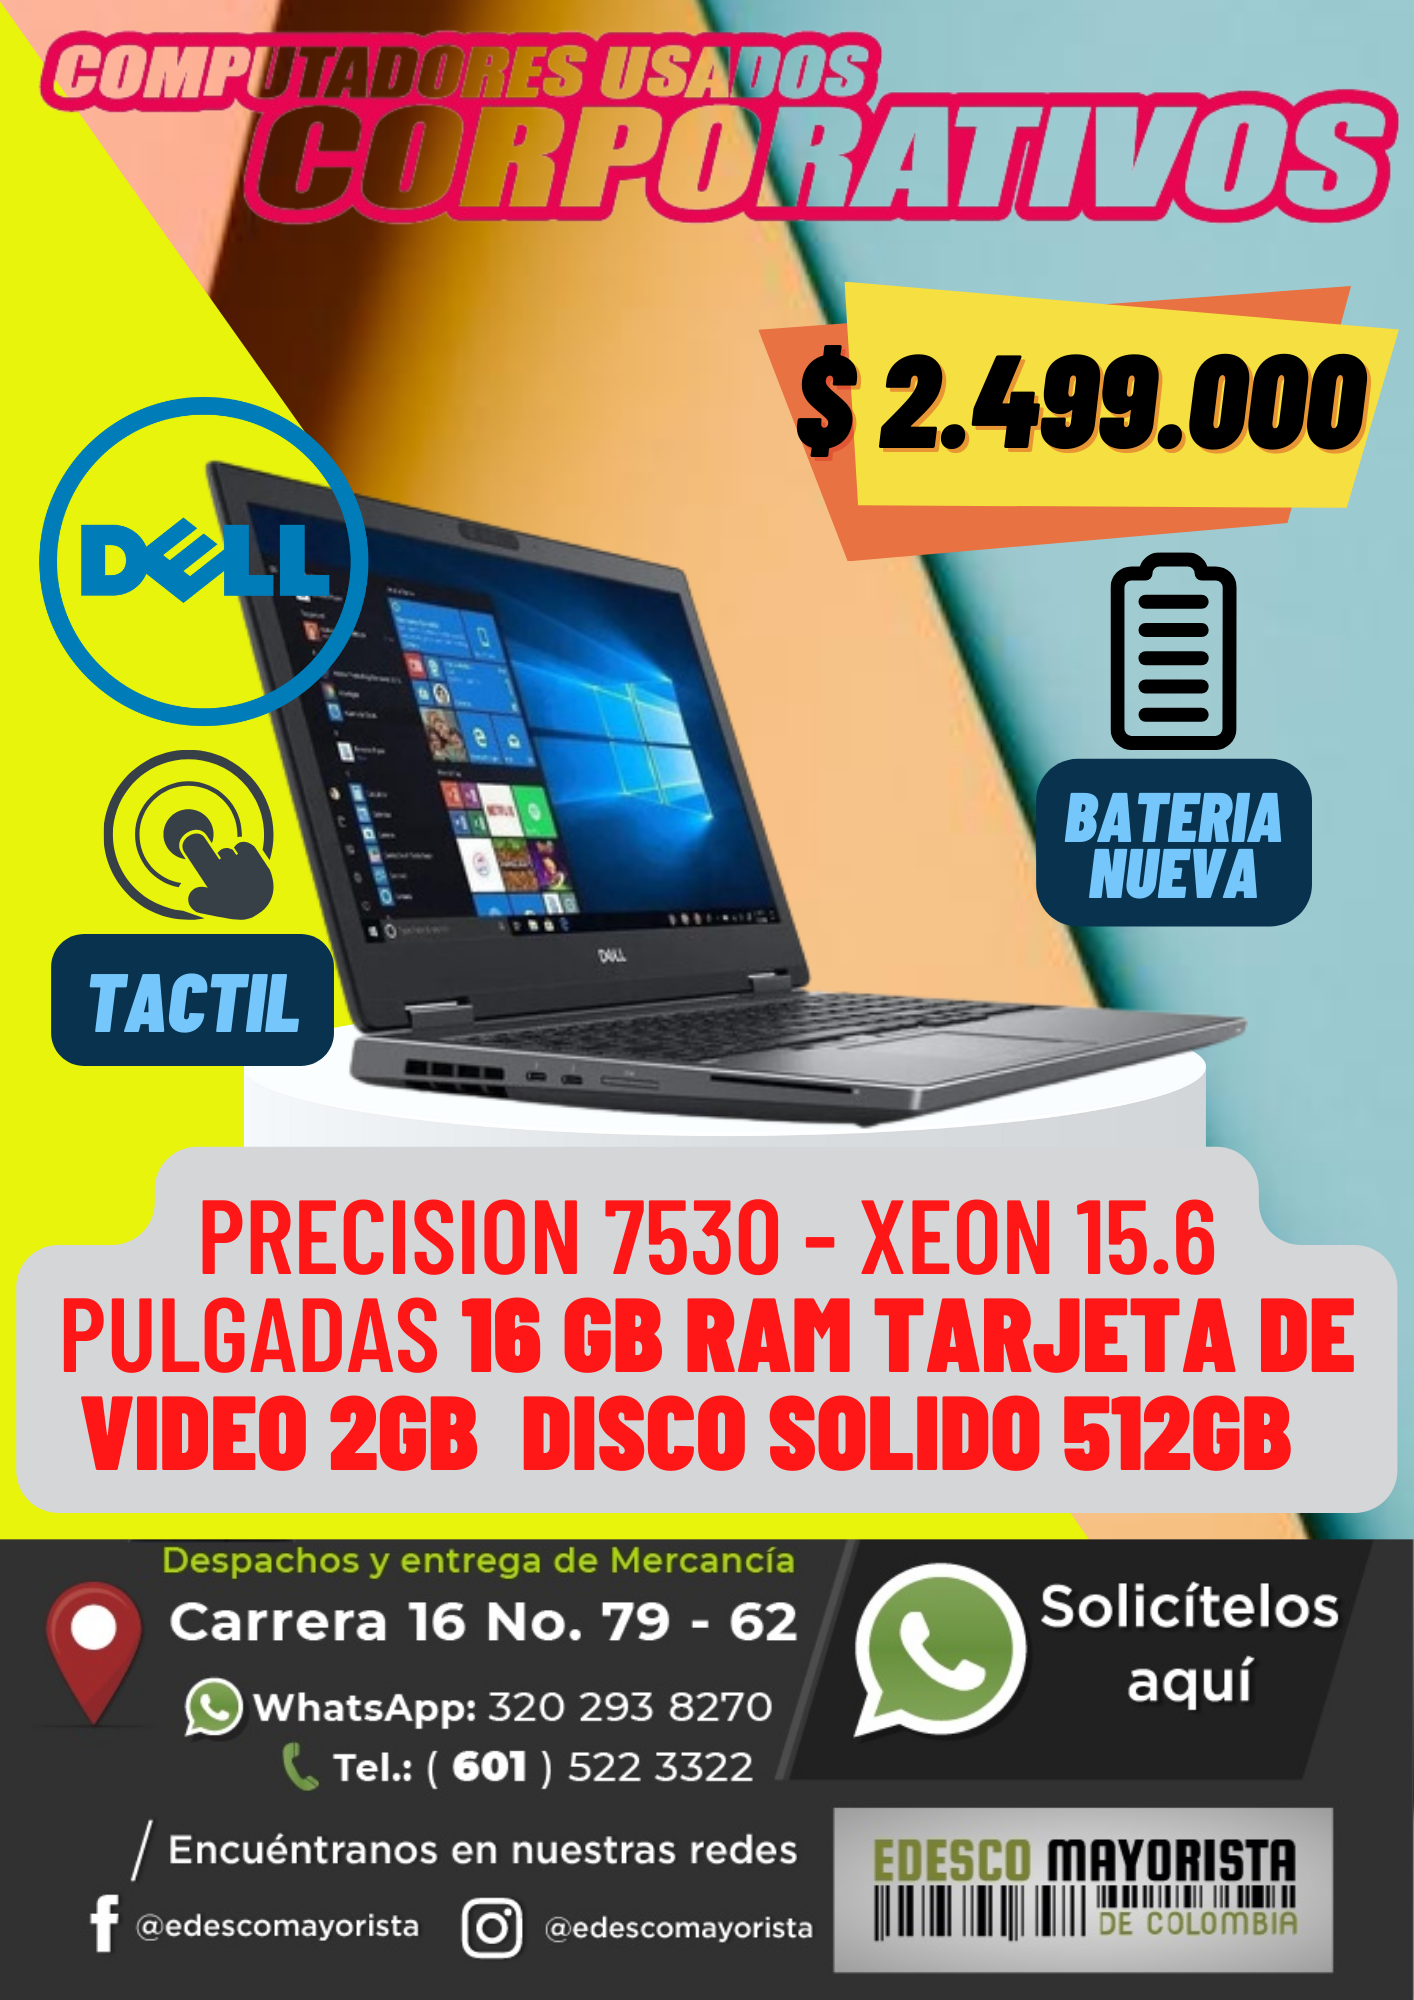 Dell Precision 7530 Xeon con tarjeta de video